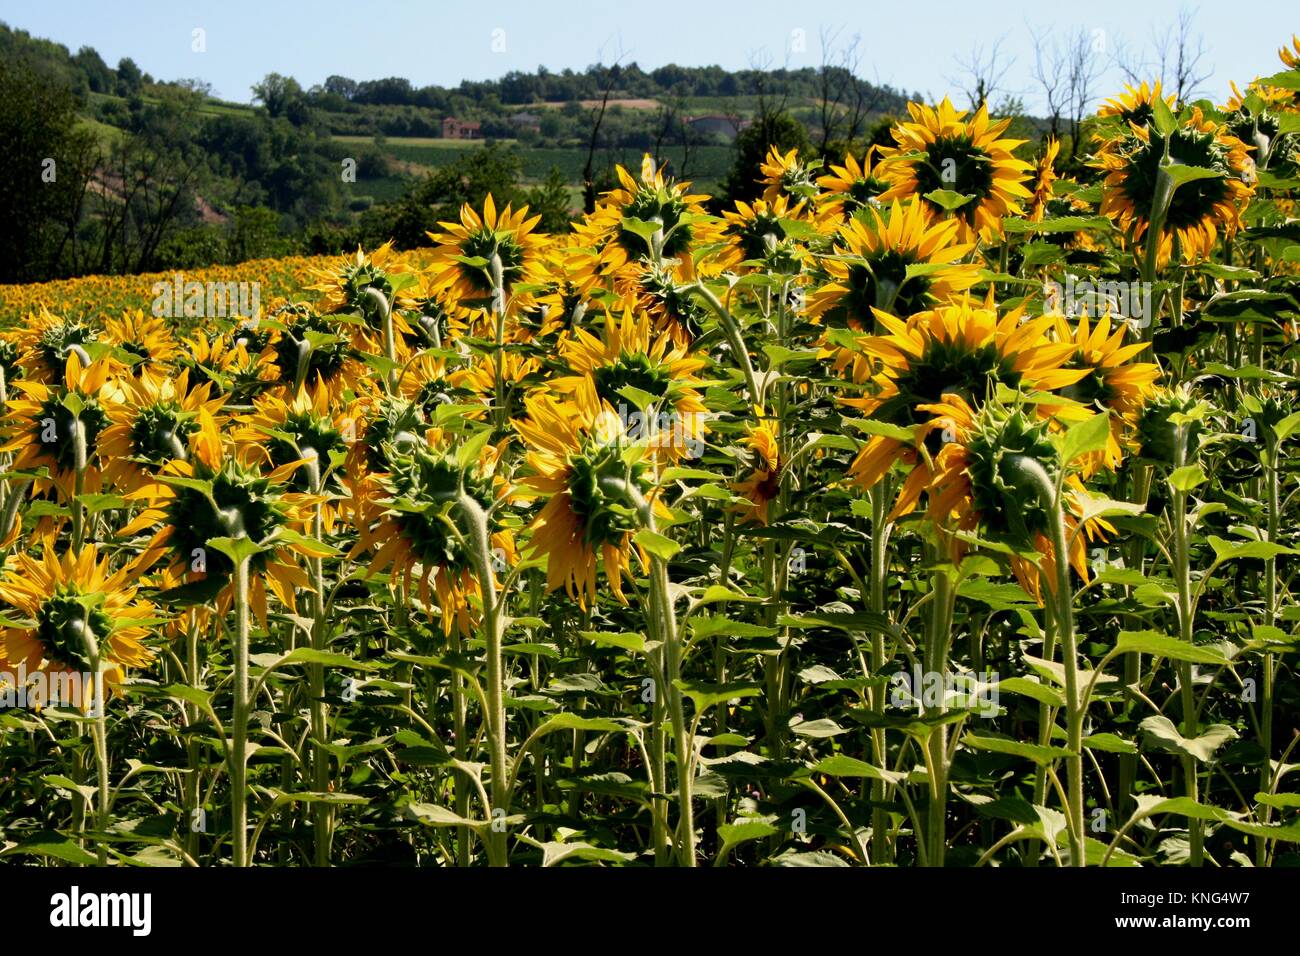 Field of sunflowers in italian landscape Stock Photo